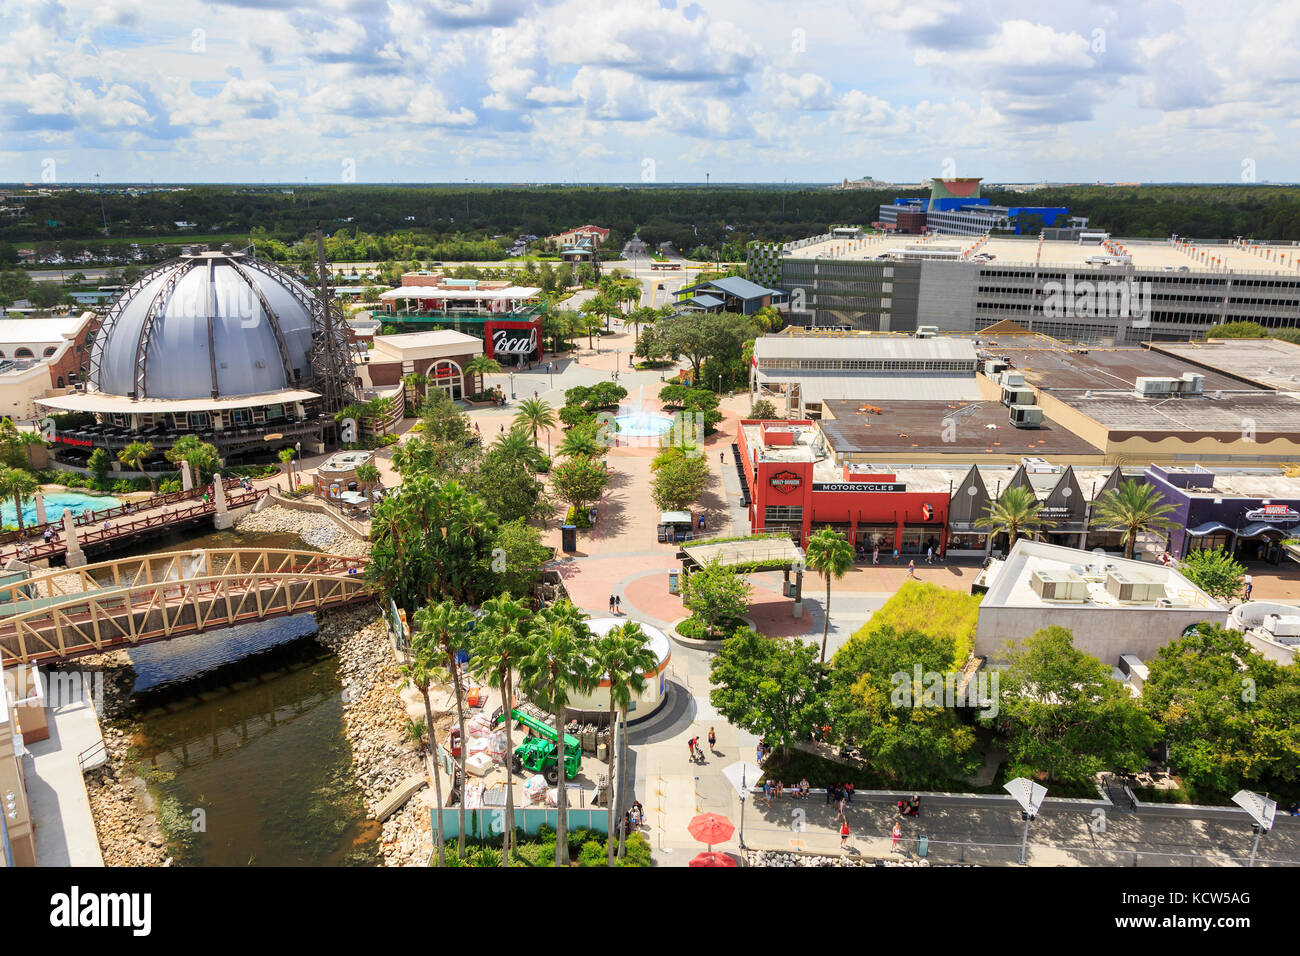 Vue aérienne du parc à thème Disney Springs, Orlando, Floride, USA Banque D'Images